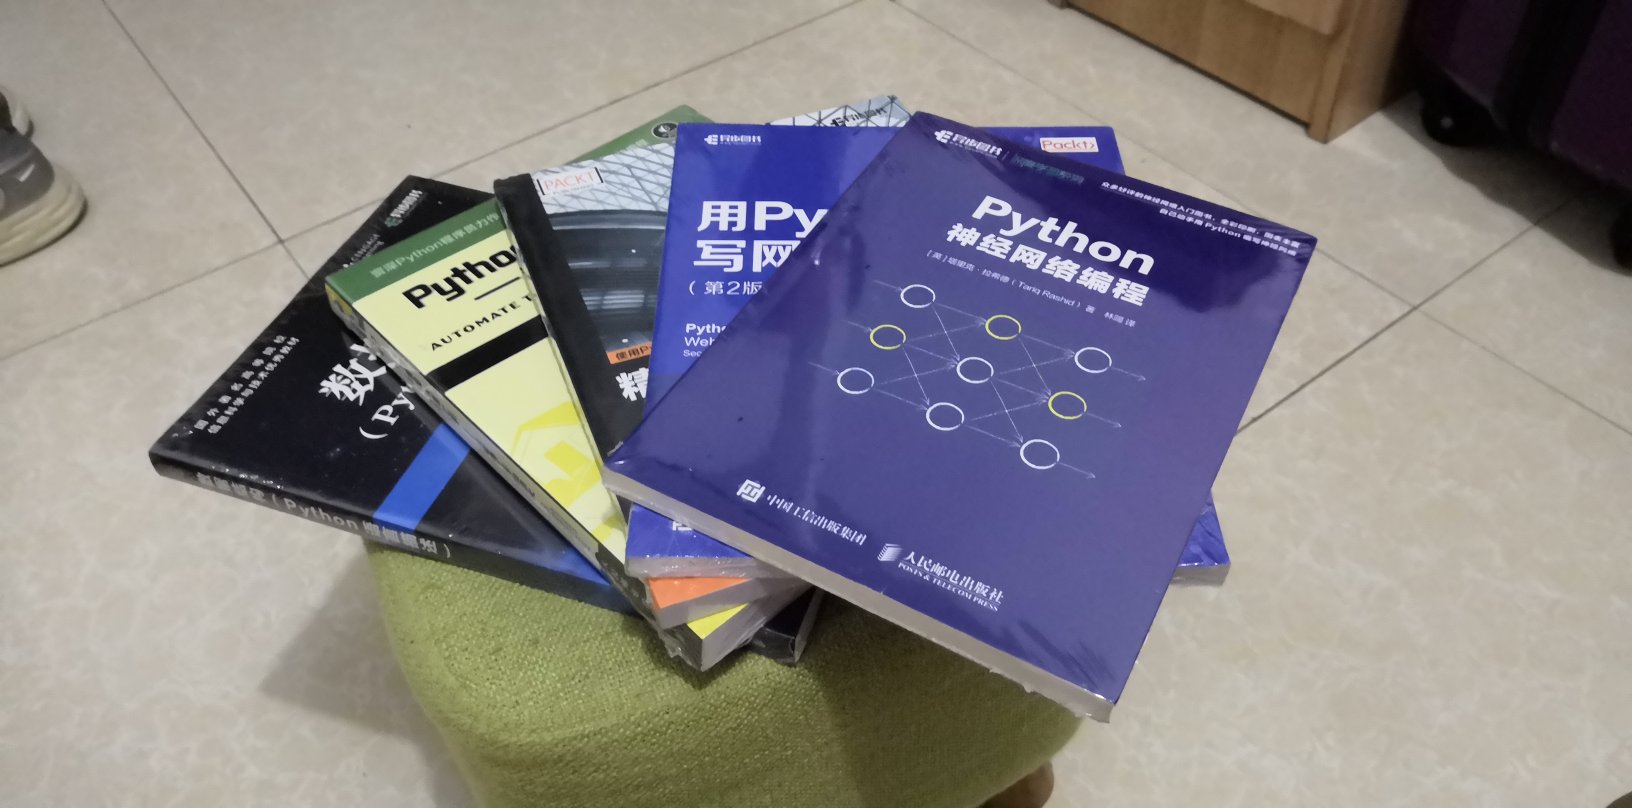 一下子买了五本都是Python相关的书籍，是应该好好看了，毕竟Python是最接近人工智能的语言，为了以后适应时代的要求，好好学习，天天向上。